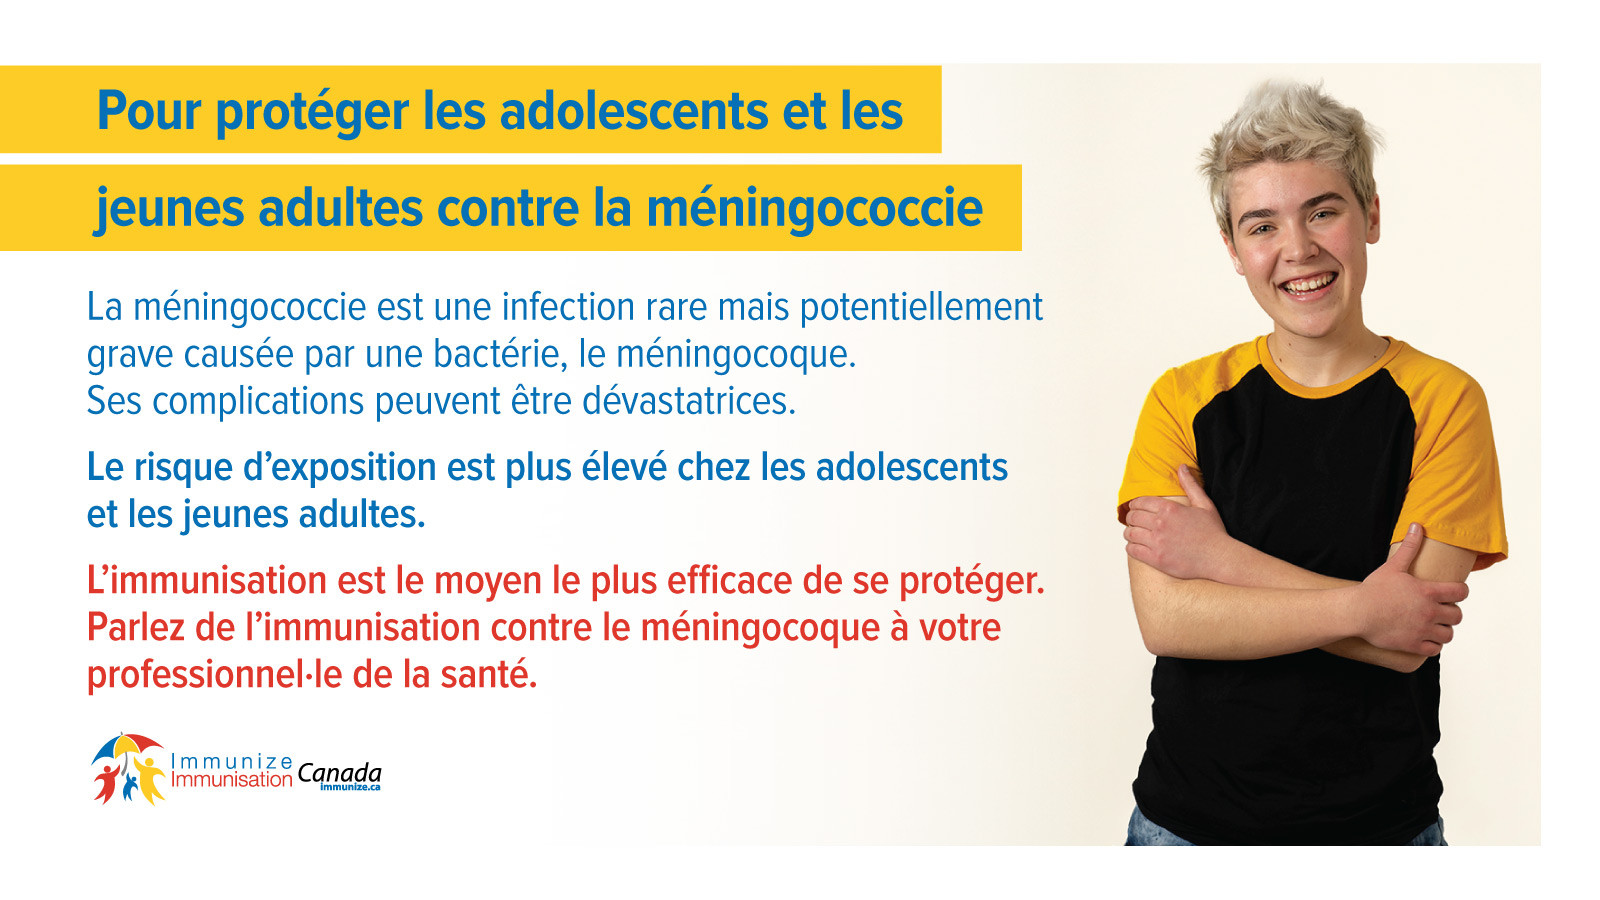 Pour protéger les adolescents et les jeunes adultes contre la méningococcie - image 2 pour Twitter